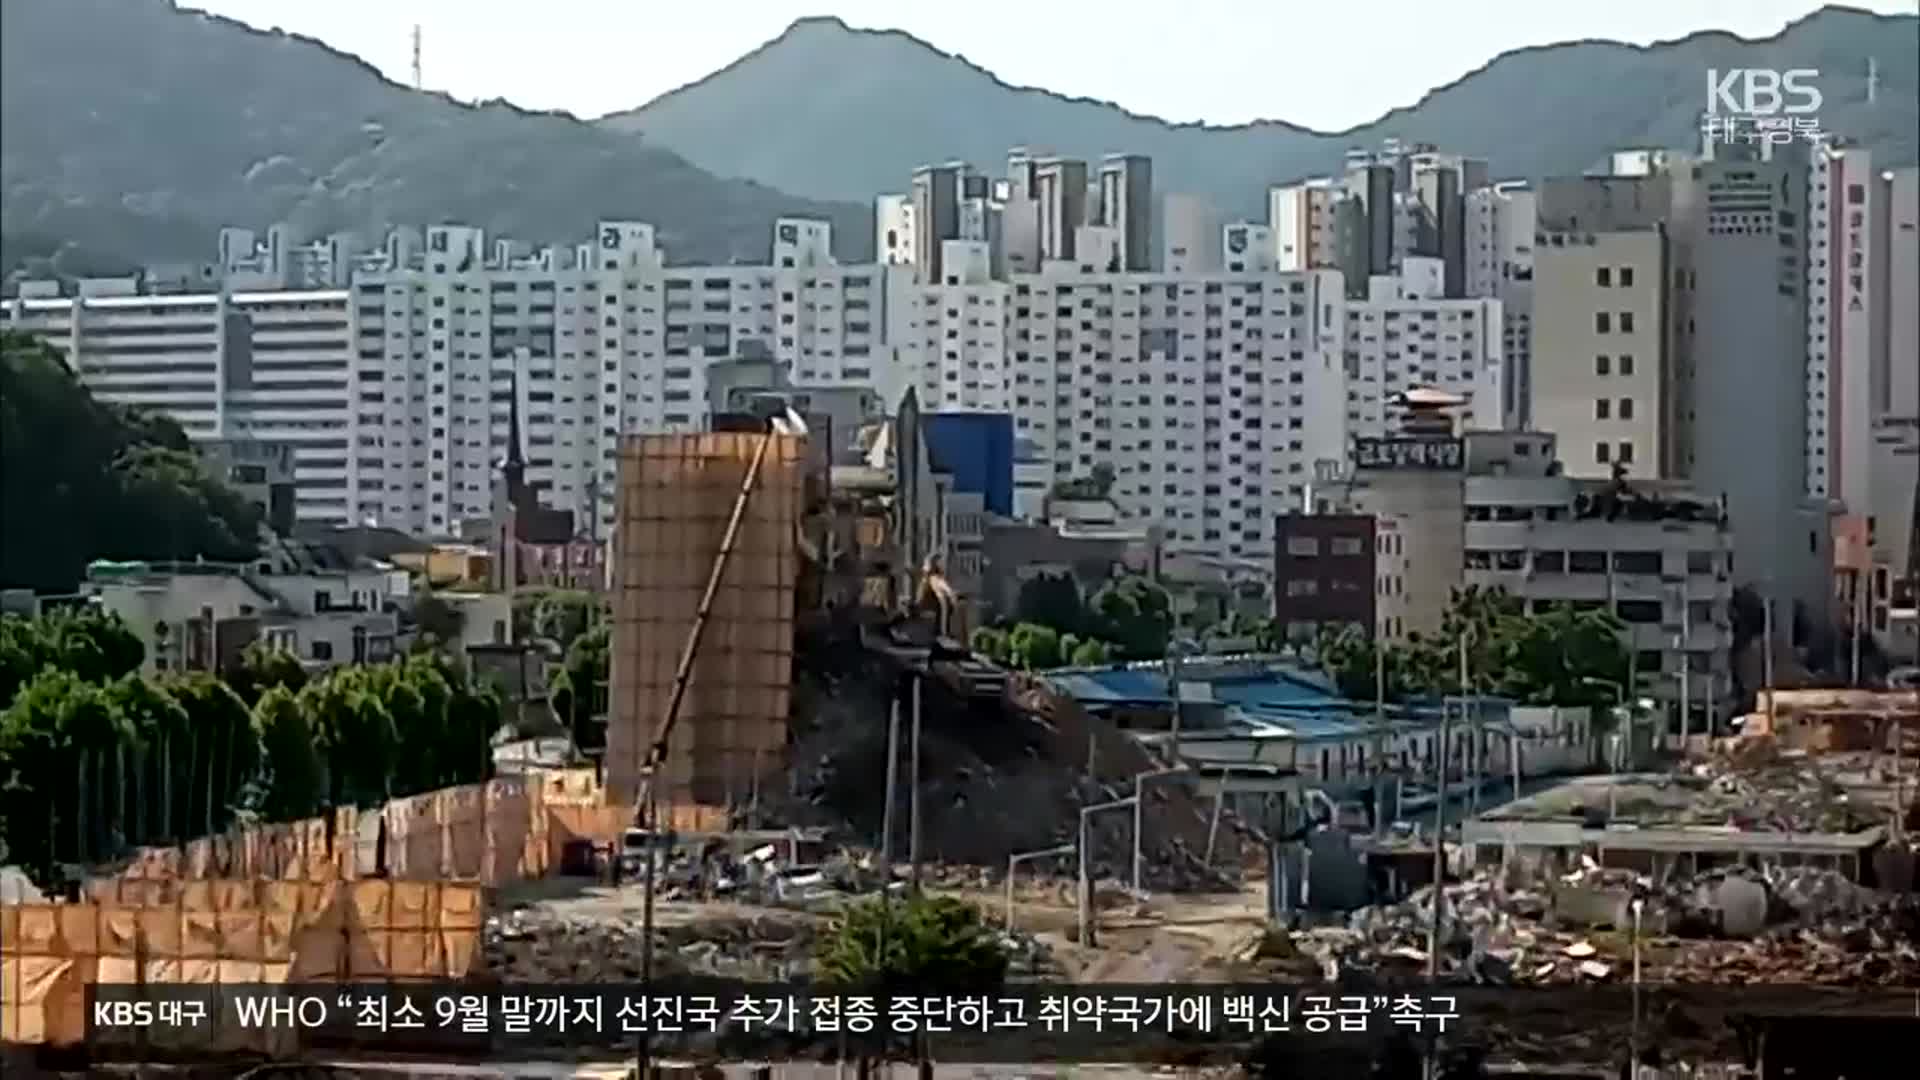 “보강 안해 1층 내려않으며 전체 붕괴”, 광주철거사고 조사 결과 공개